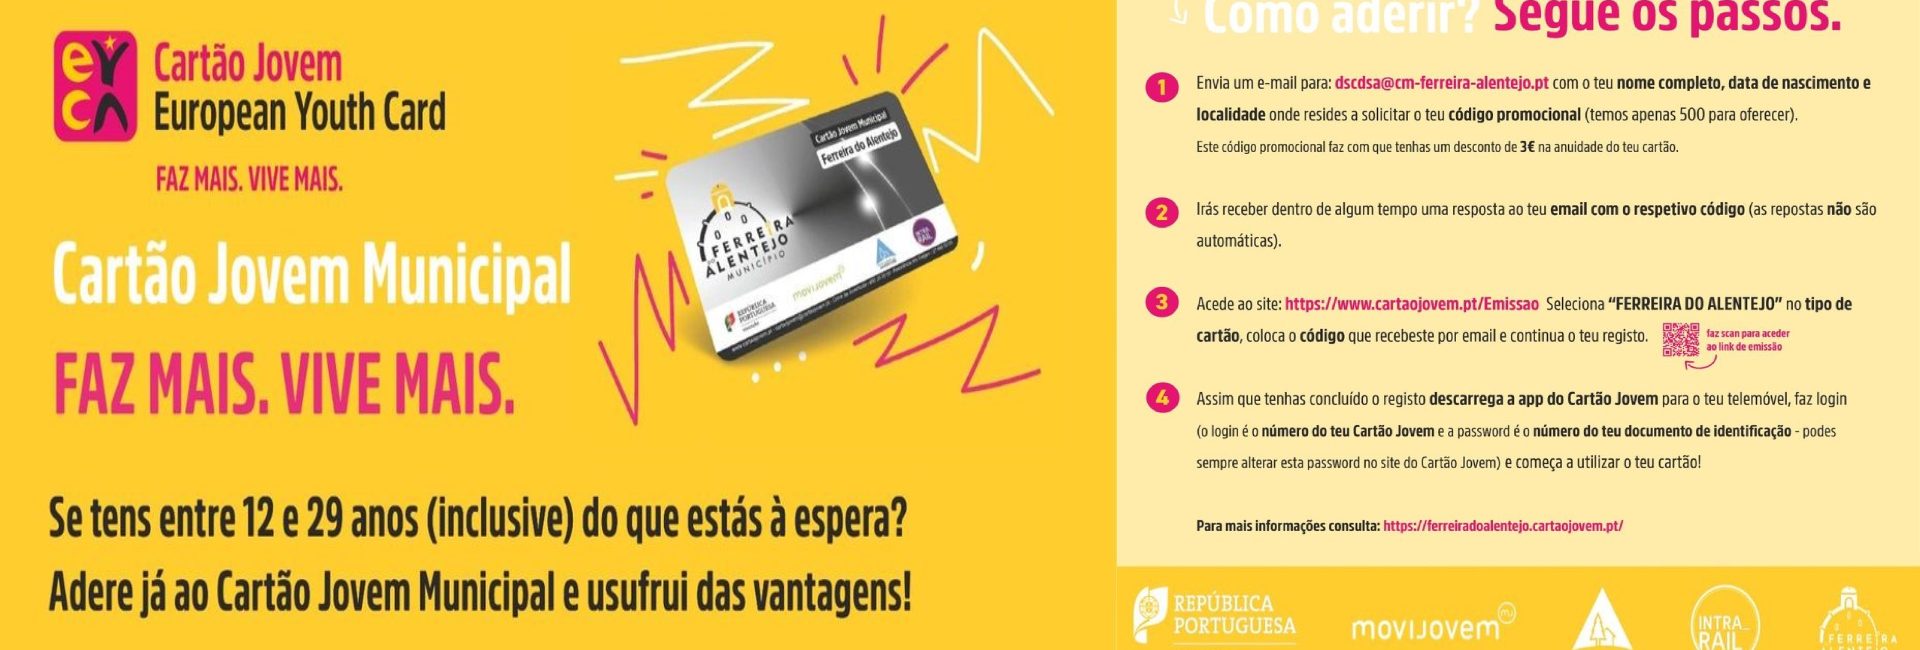 (Português) Cartão Jovem Municipal